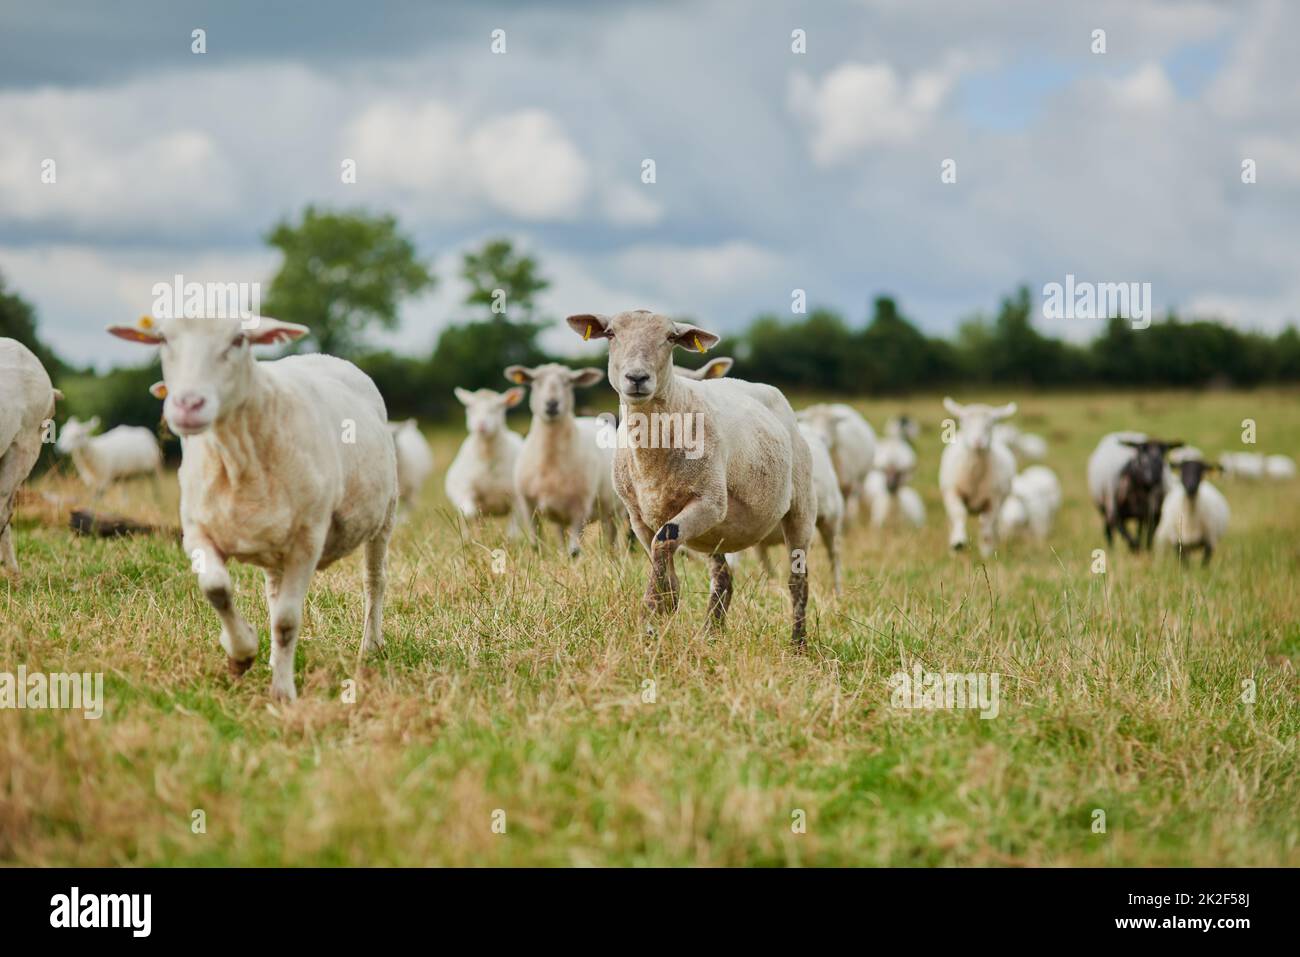 La dernière, il y a un œuf pourri. Prise de vue d'un troupeau de moutons qui court rapidement dans une direction à l'extérieur d'une ferme. Banque D'Images